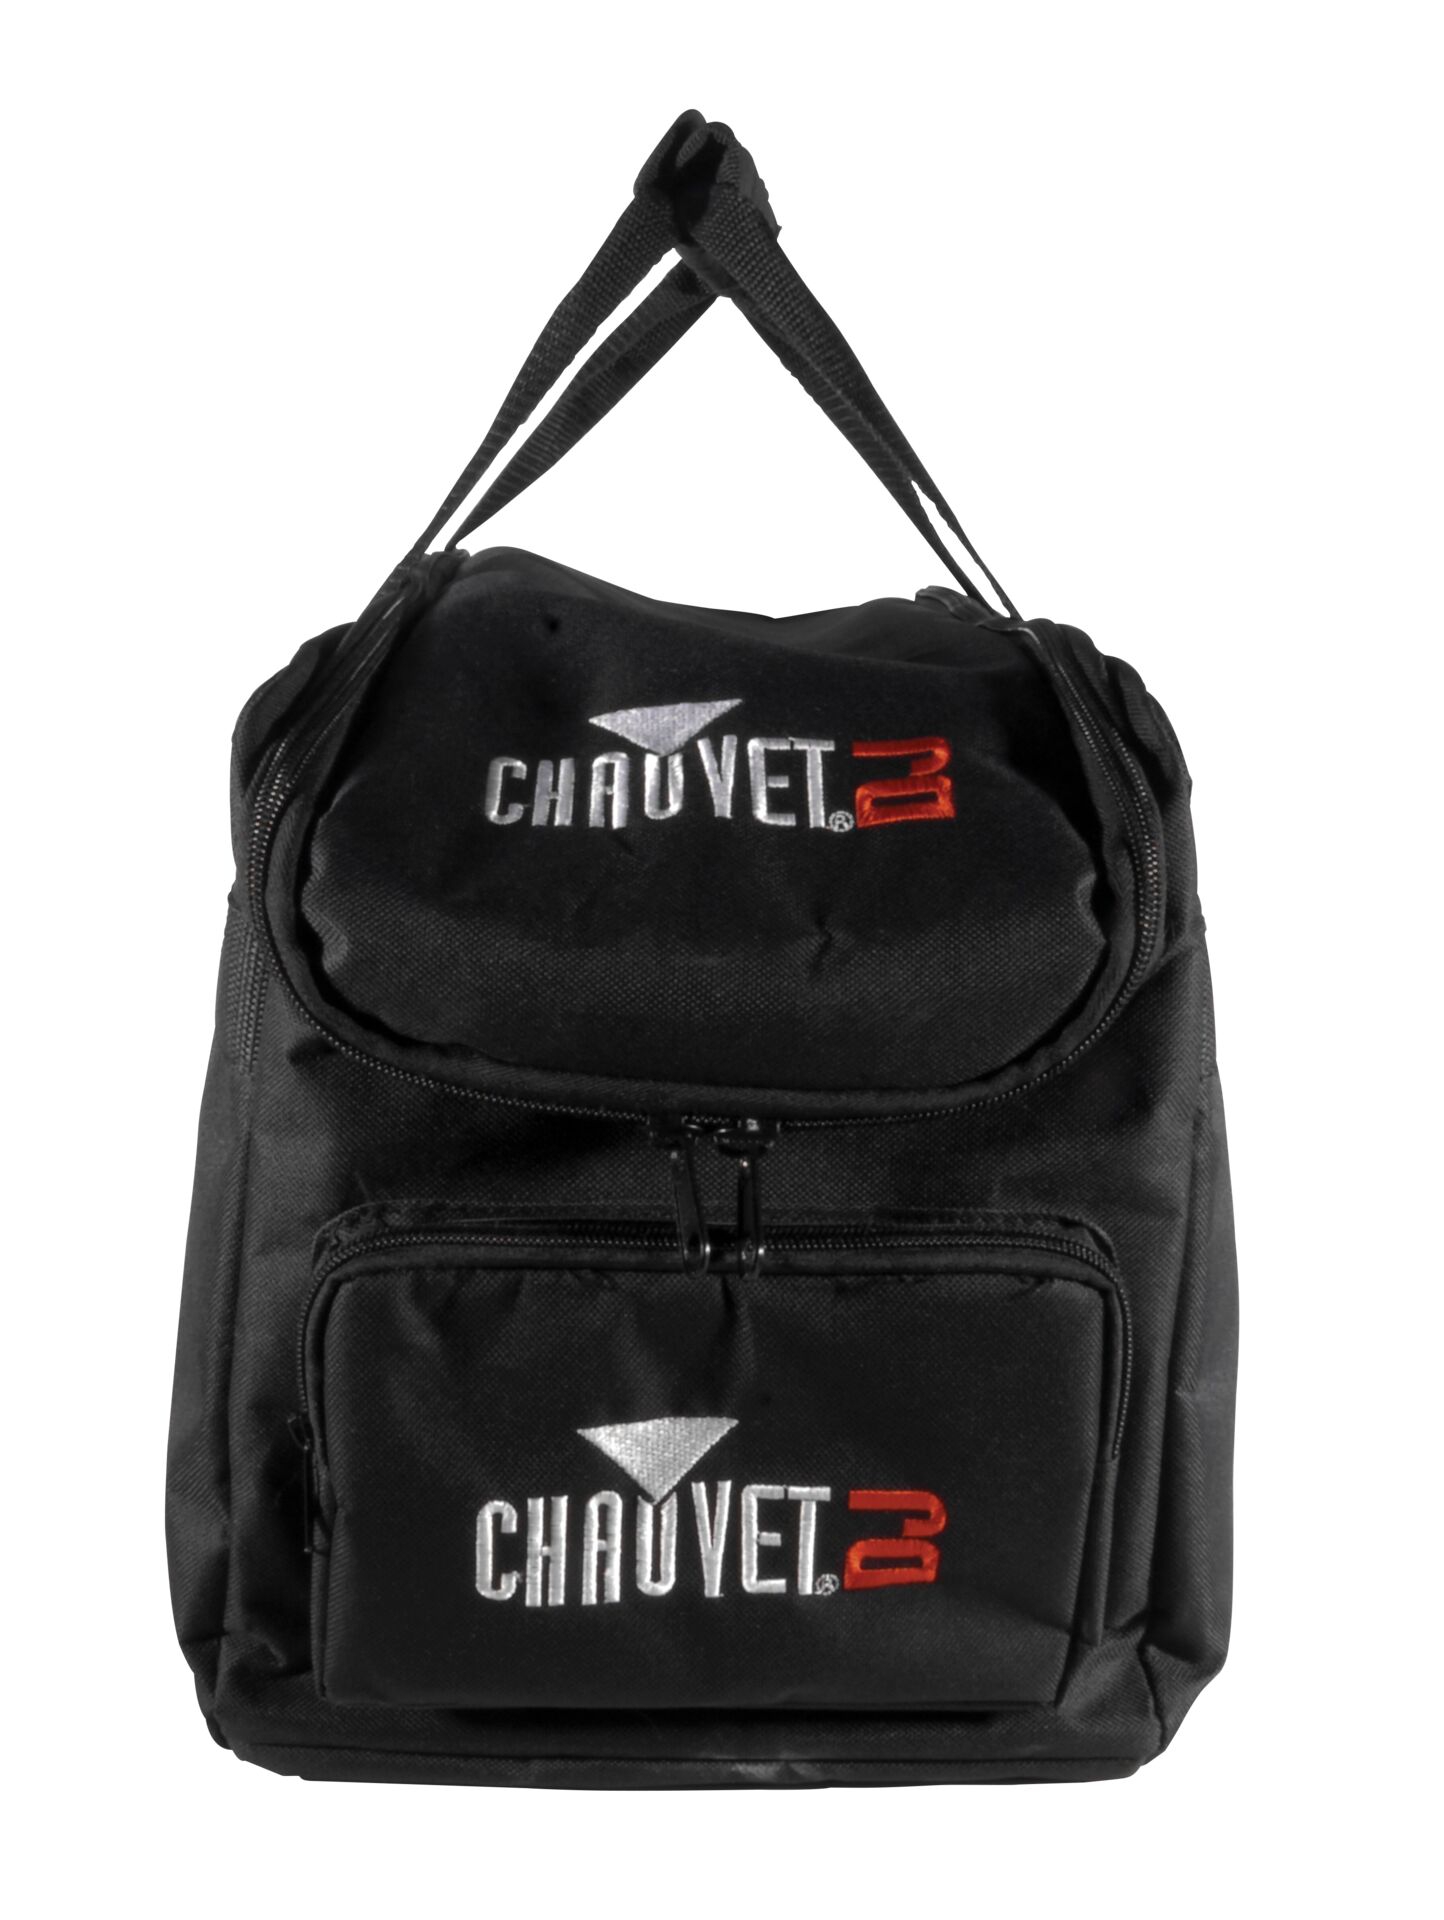 Chauvet DJ VIP Gear Bag CHS-30